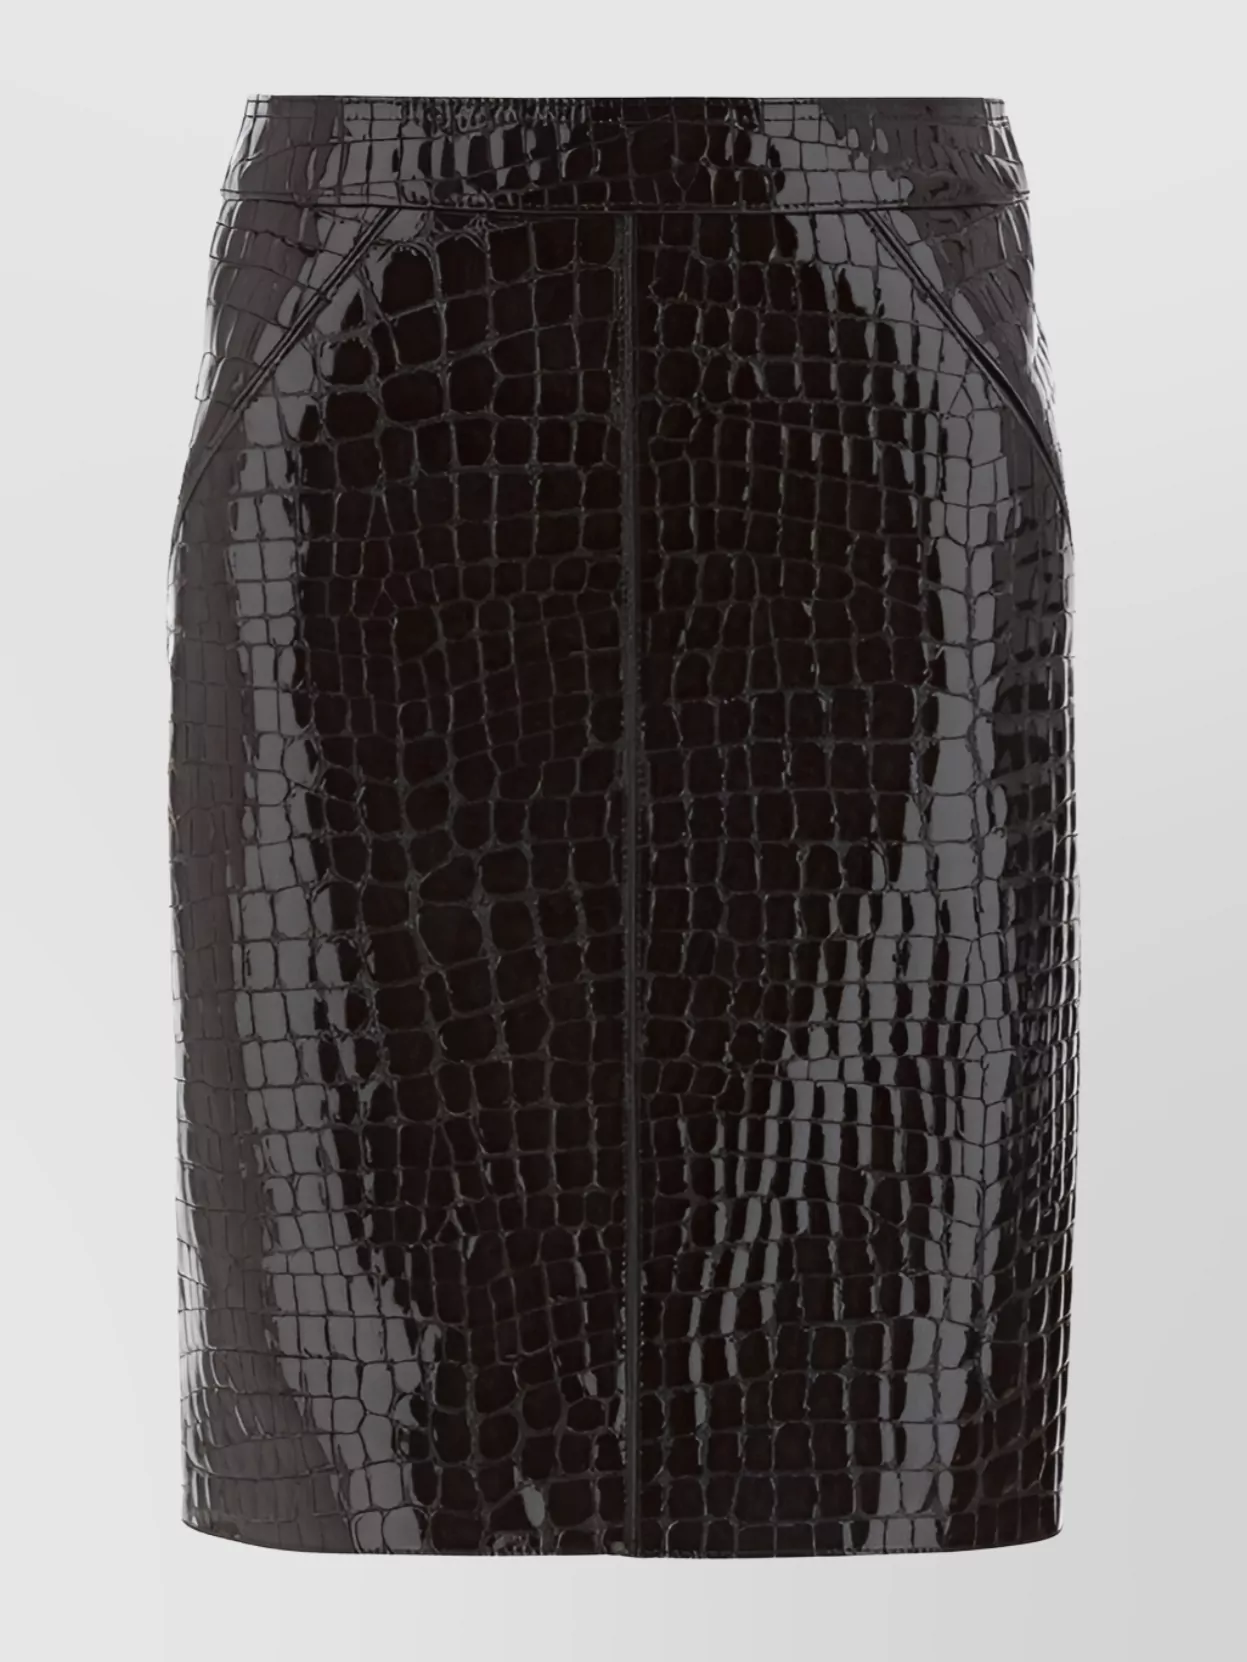 Tom Ford Crocodile Leather Skirt Back Slit In Black